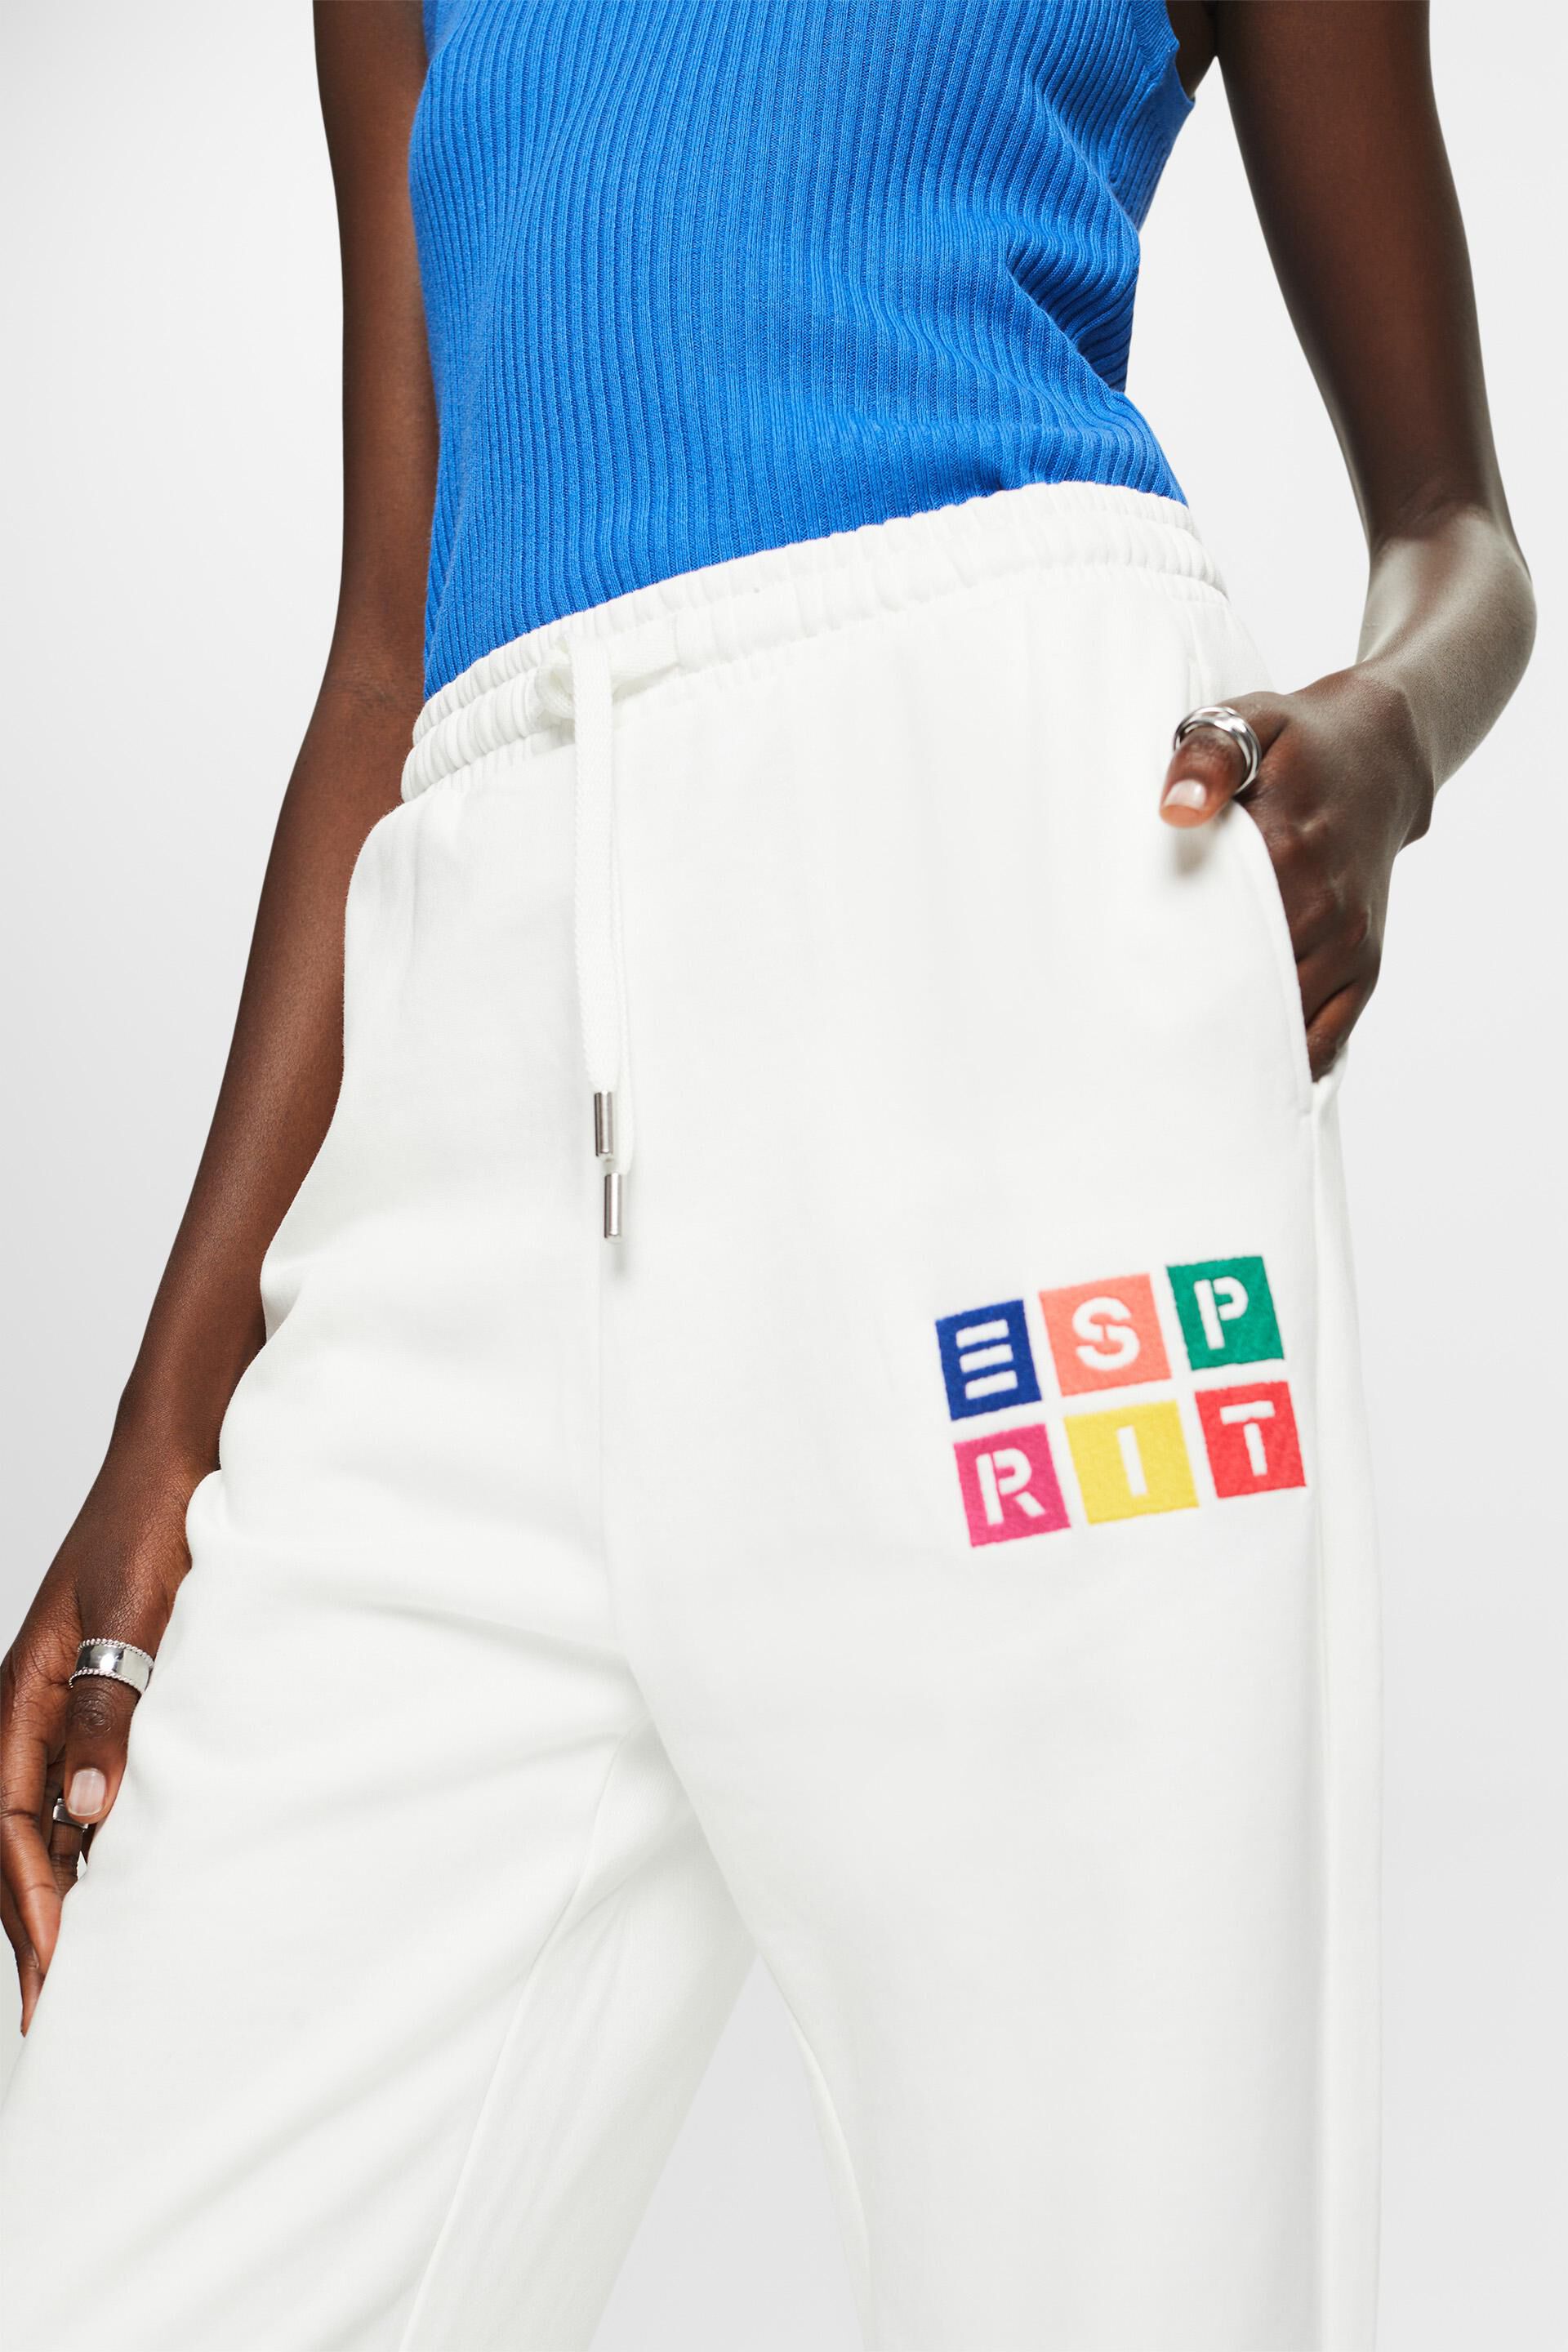 Esprit Damen Trainingshose mit Logo, Bio-Baumwolle